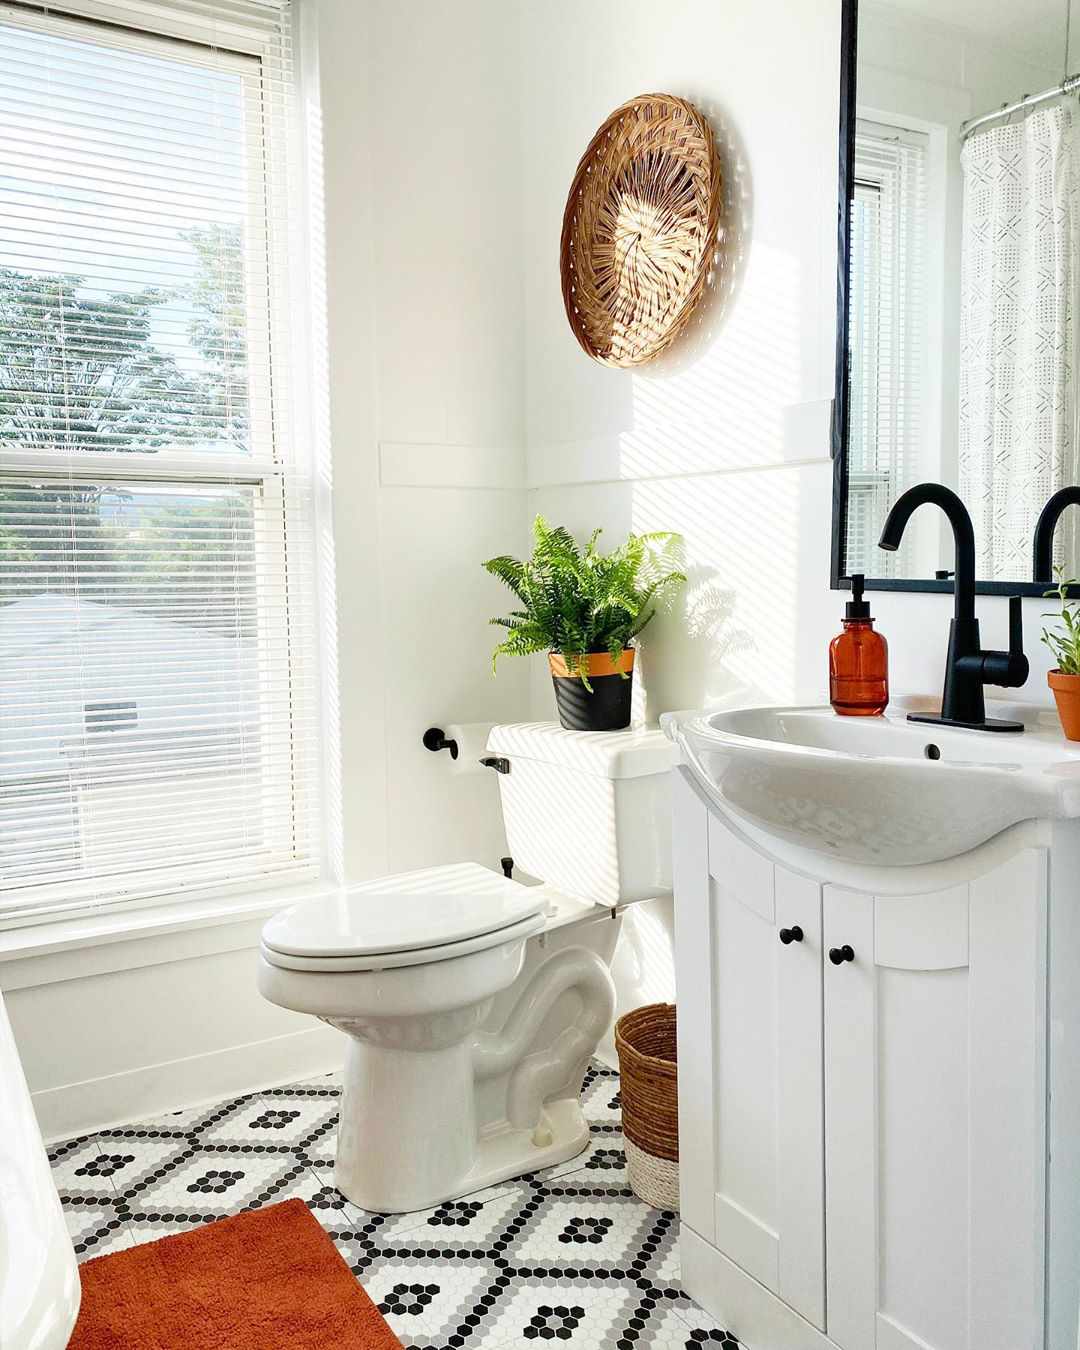 Salle de bains avec sol unique penny tile design